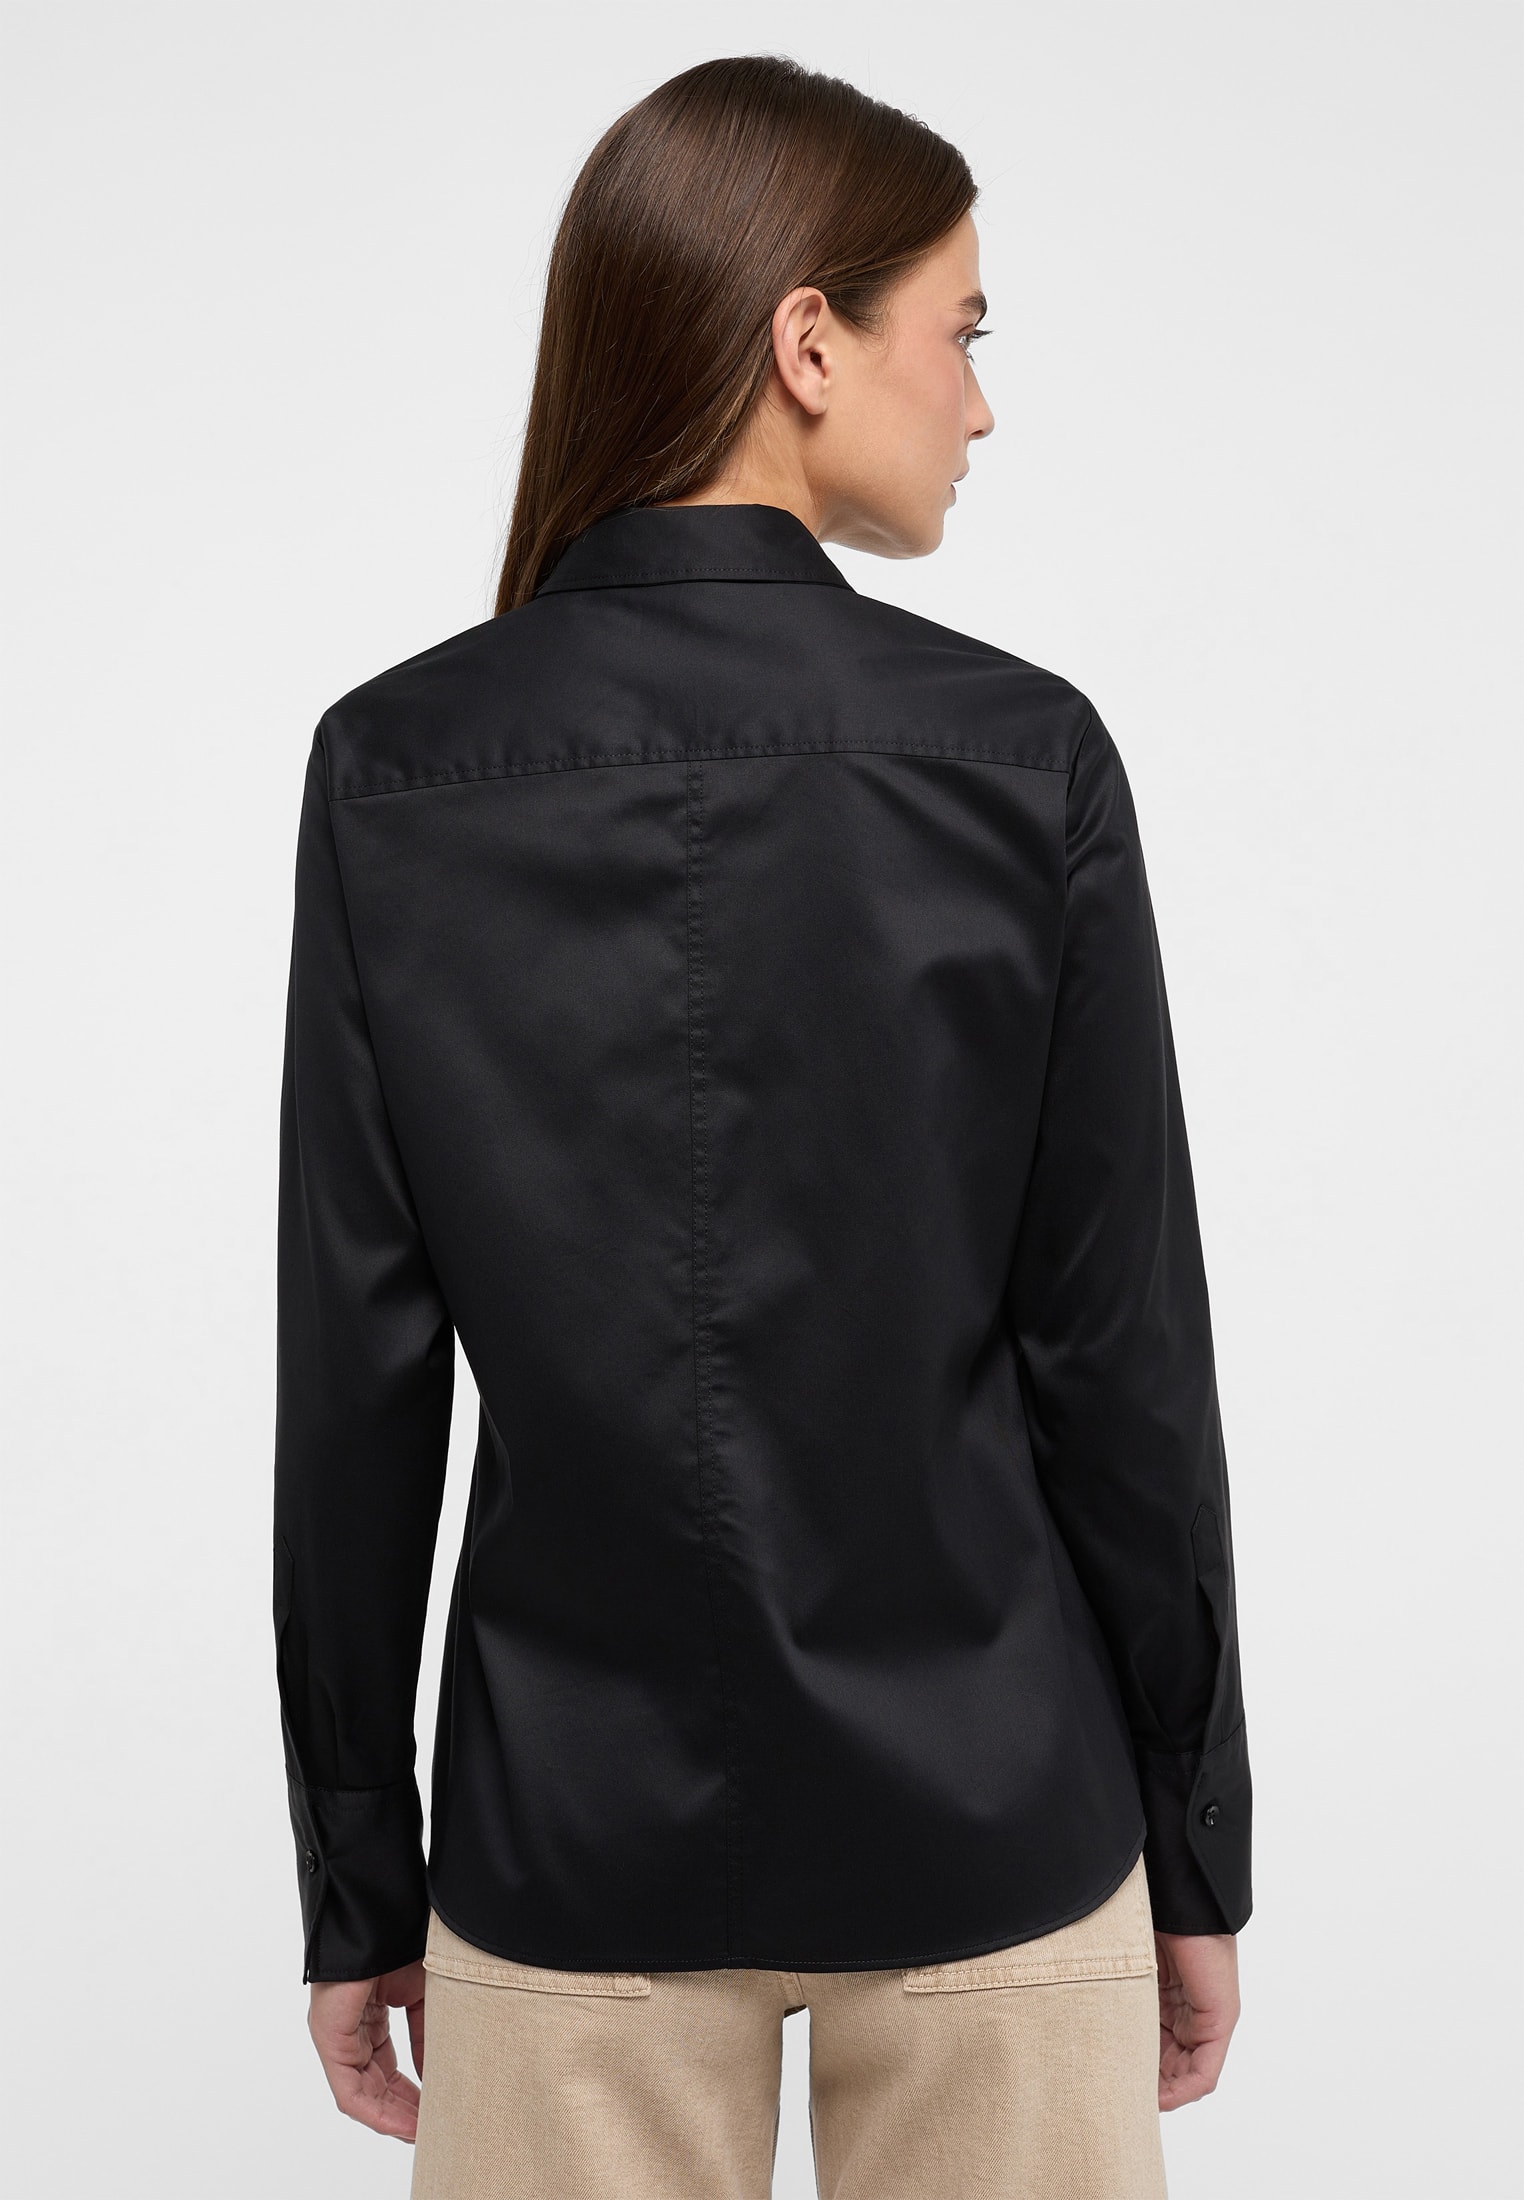 | 2BL00075-03-91-48-1/1 Bluse | schwarz | 48 unifarben Cover | schwarz in Shirt Langarm